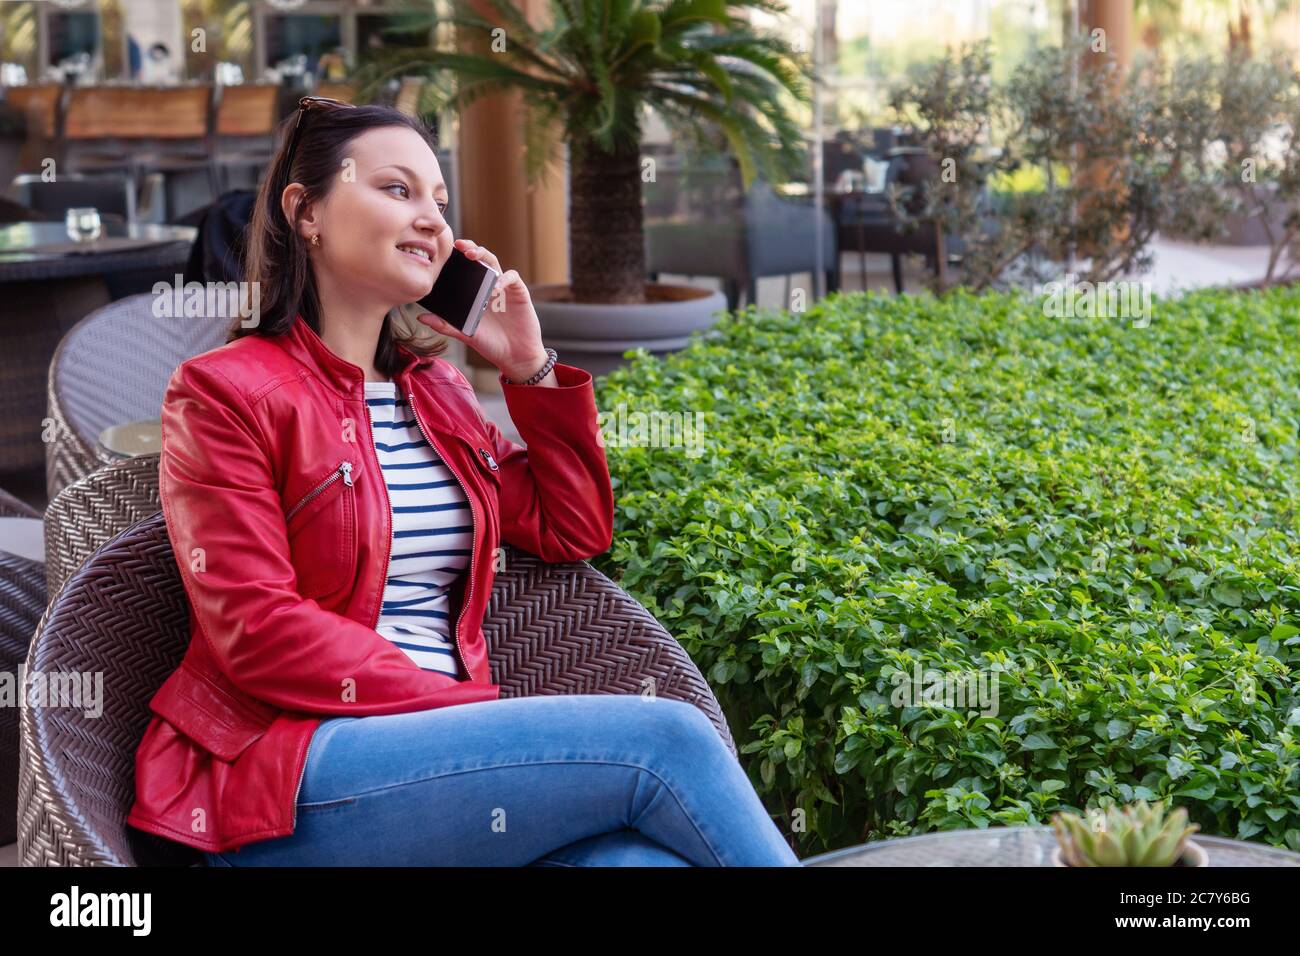 La joven habla con el teléfono y tiene un rostro feliz en un café elegante. Foto de alta calidad Foto de stock